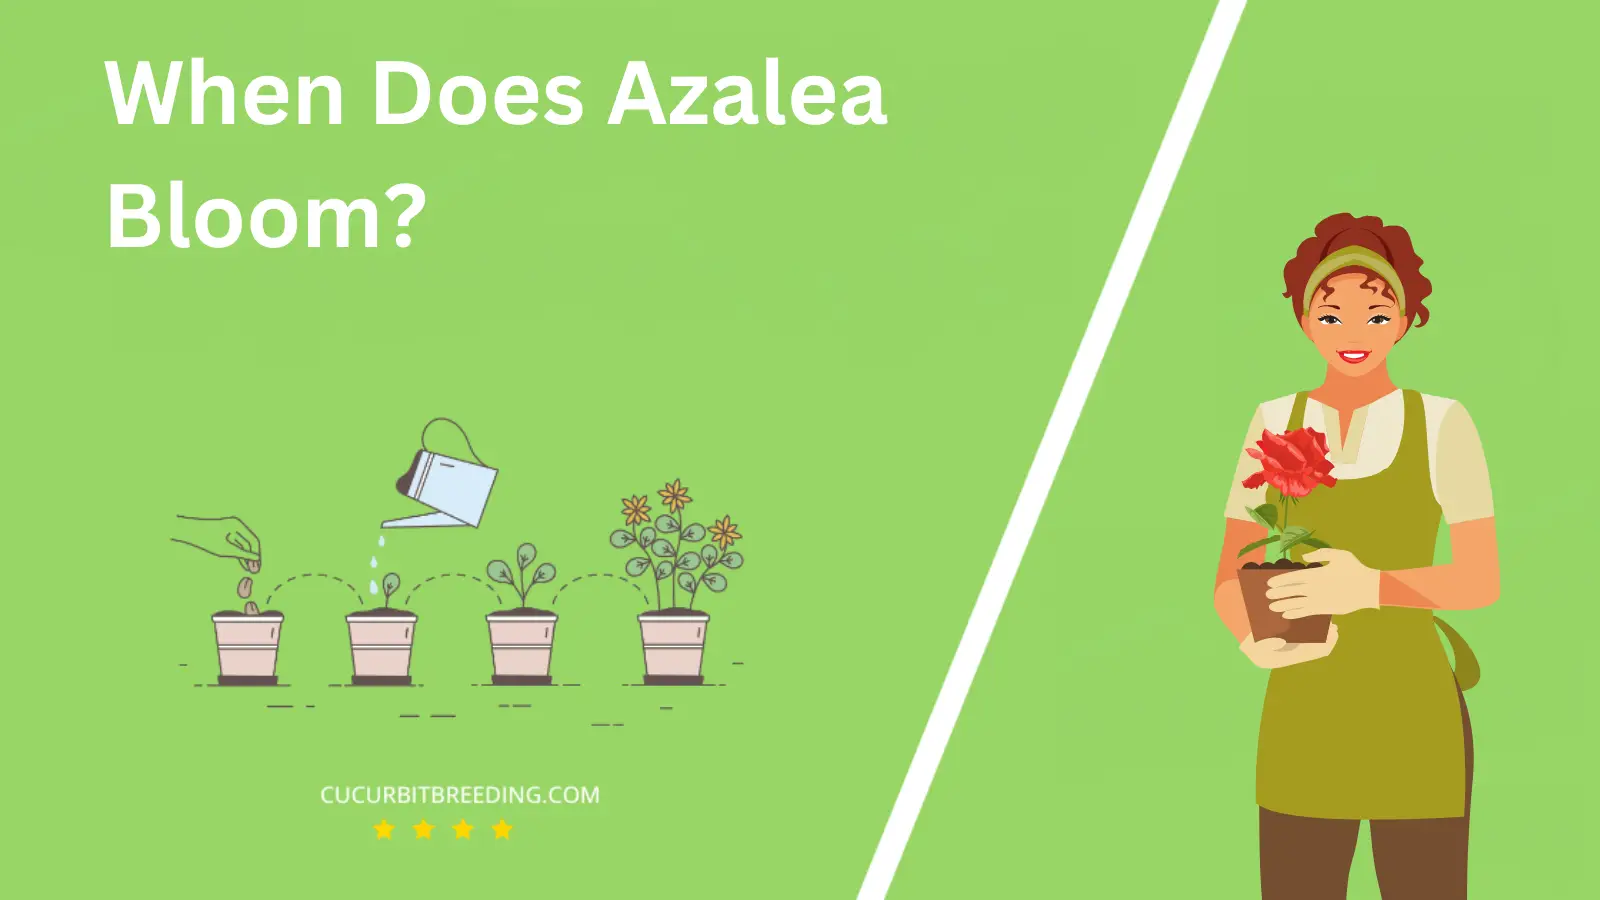 When Does Azalea Bloom?